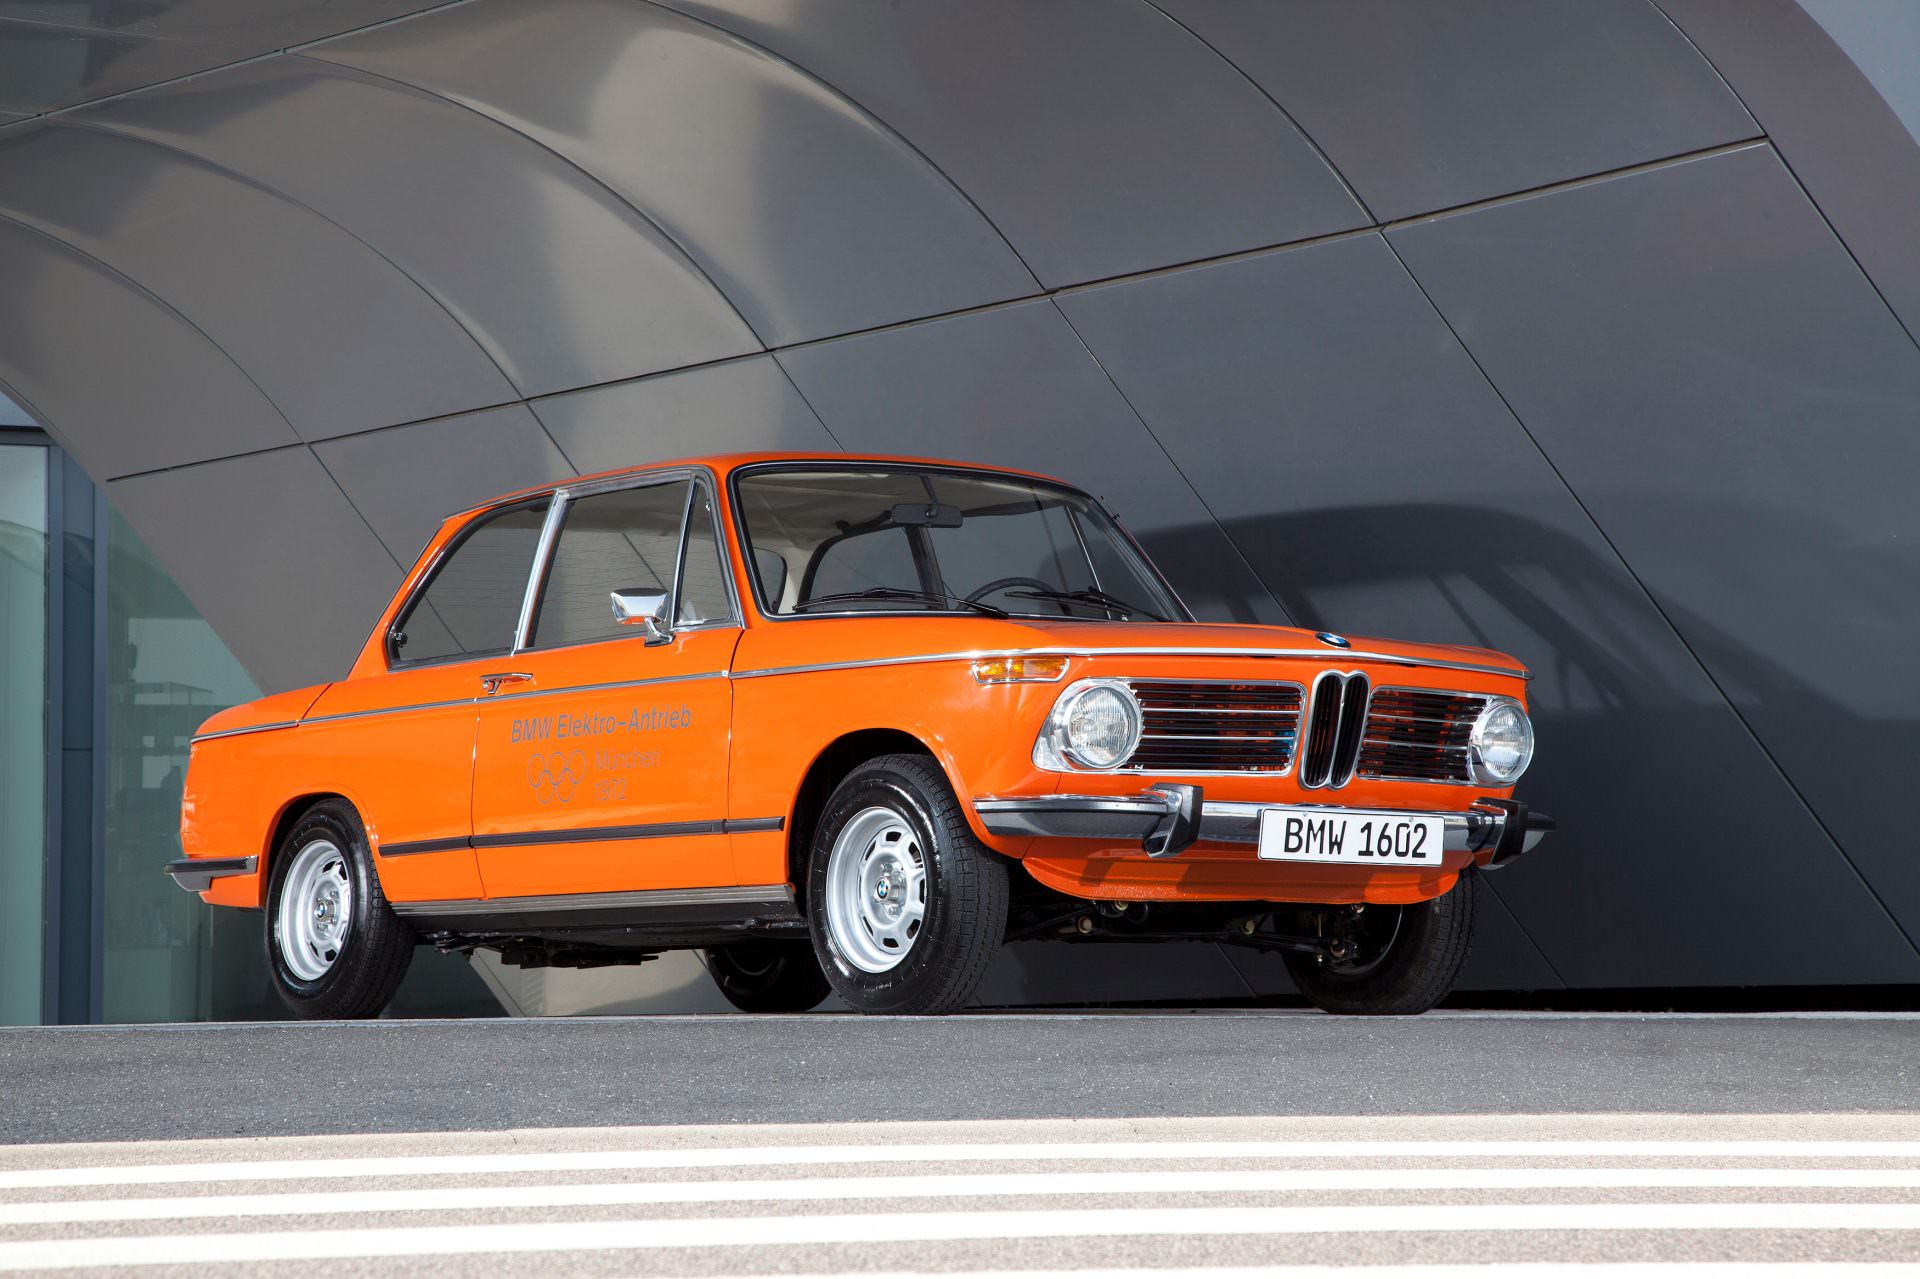 Oranžové elektrické vozidlo BMW 1602 z roku 1972 je vystaveno v moderním prostředí se zakřivenými bílými stěnami. Vůz má klasický, hranatý design typický pro sedany 70. let, s kulatými světlomety a výraznou ledvinkou BMW.